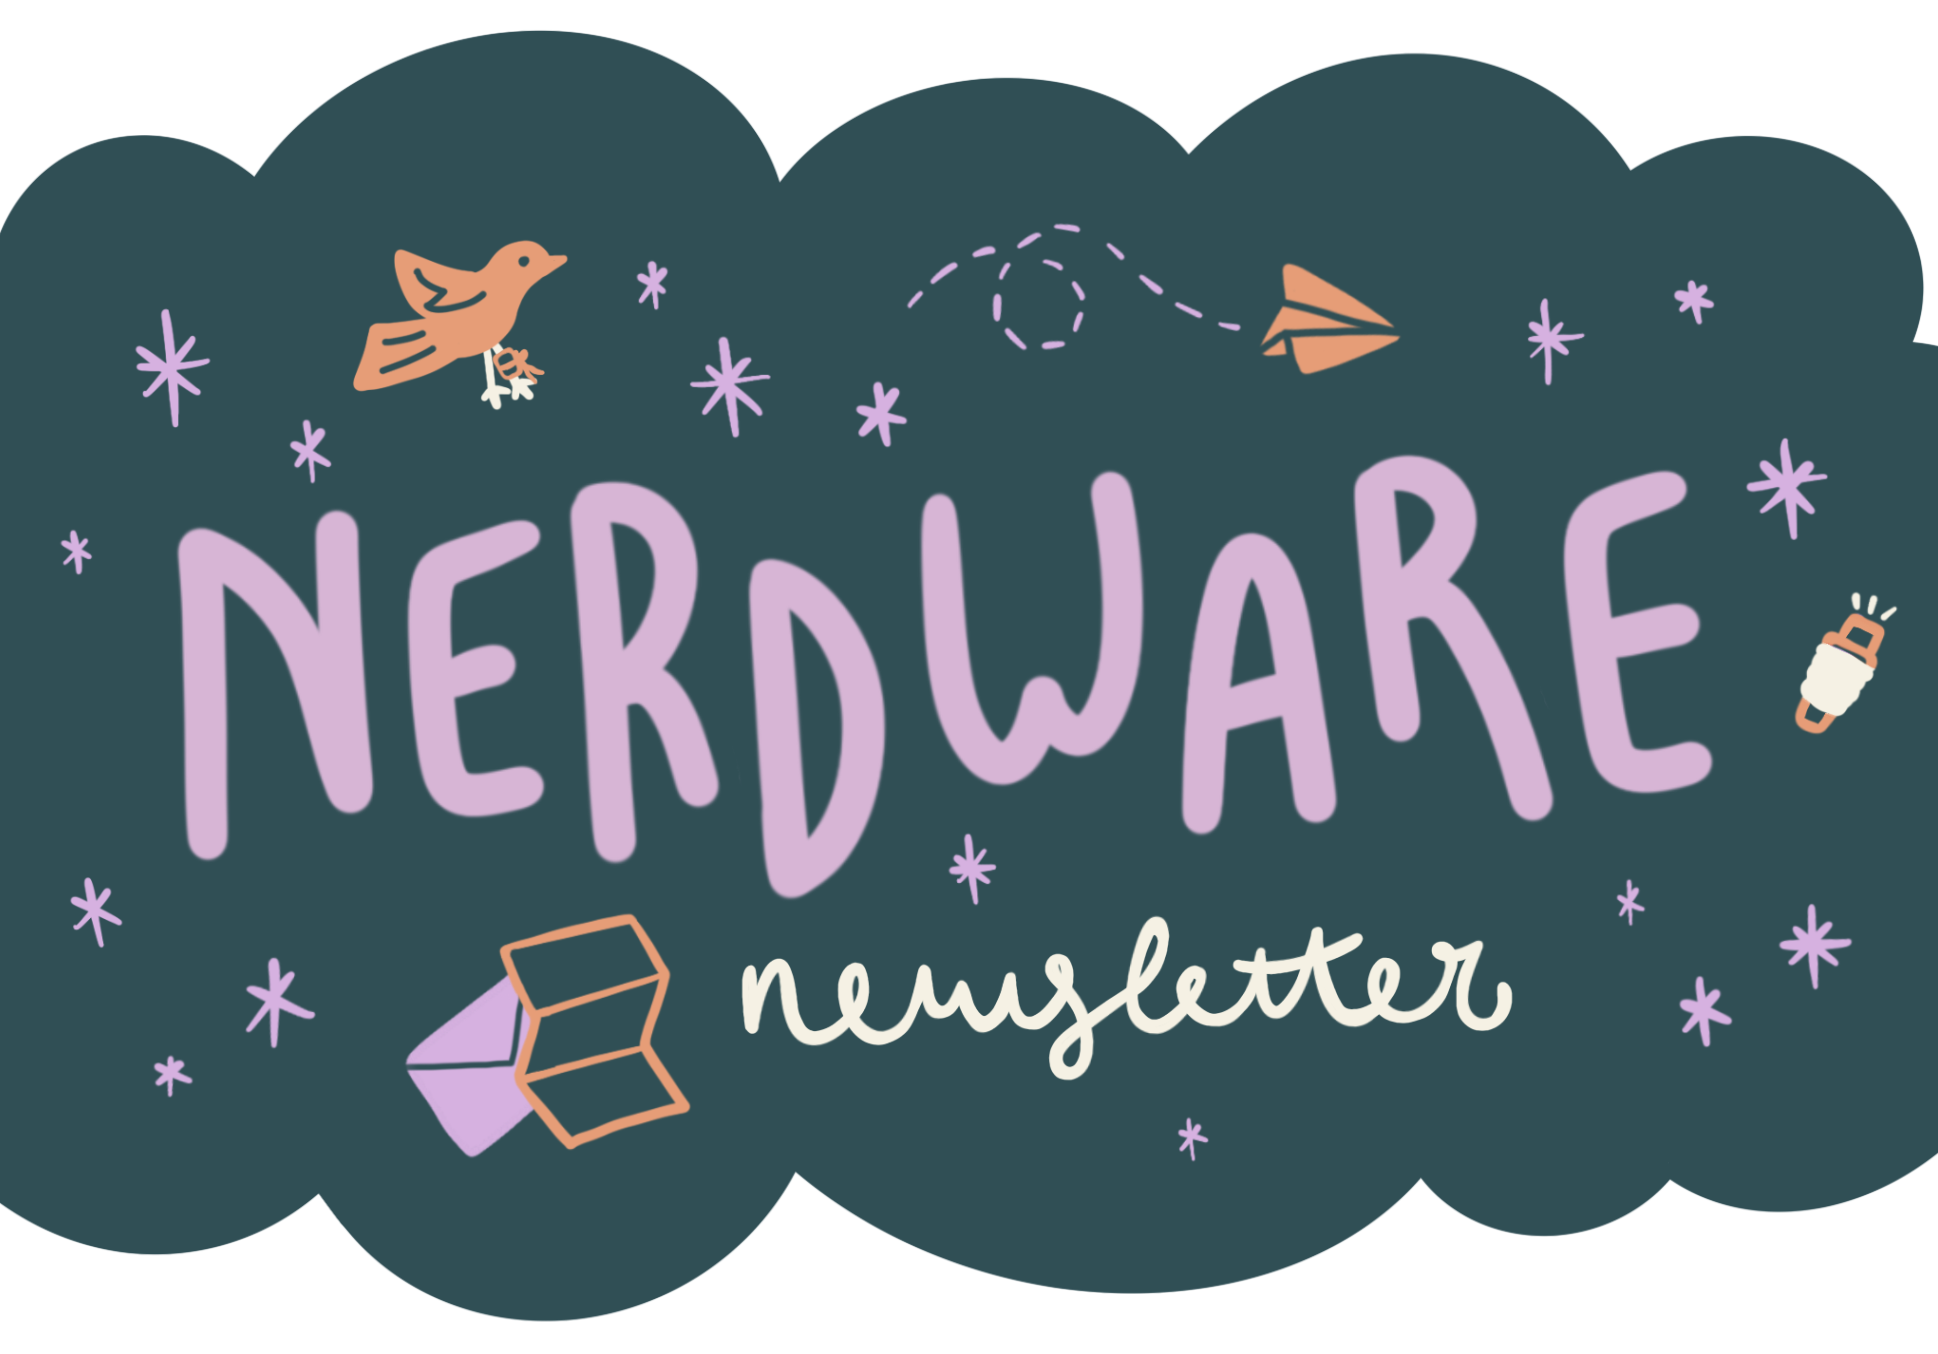 Nerdware Newsletter